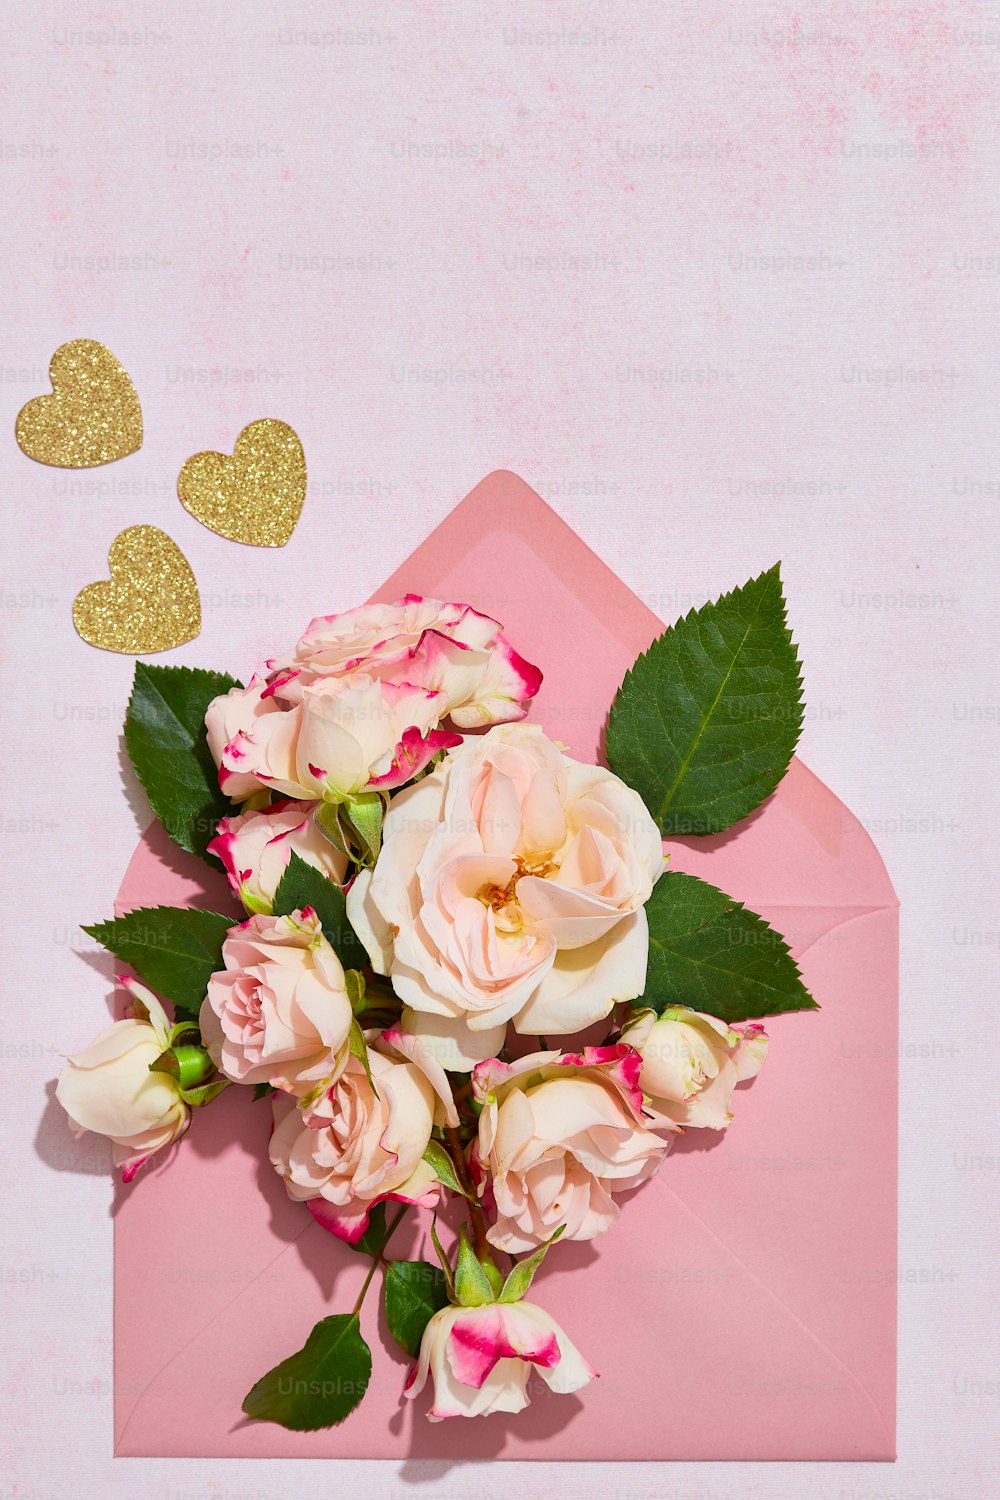 バラの花束が描かれたピンクの封筒